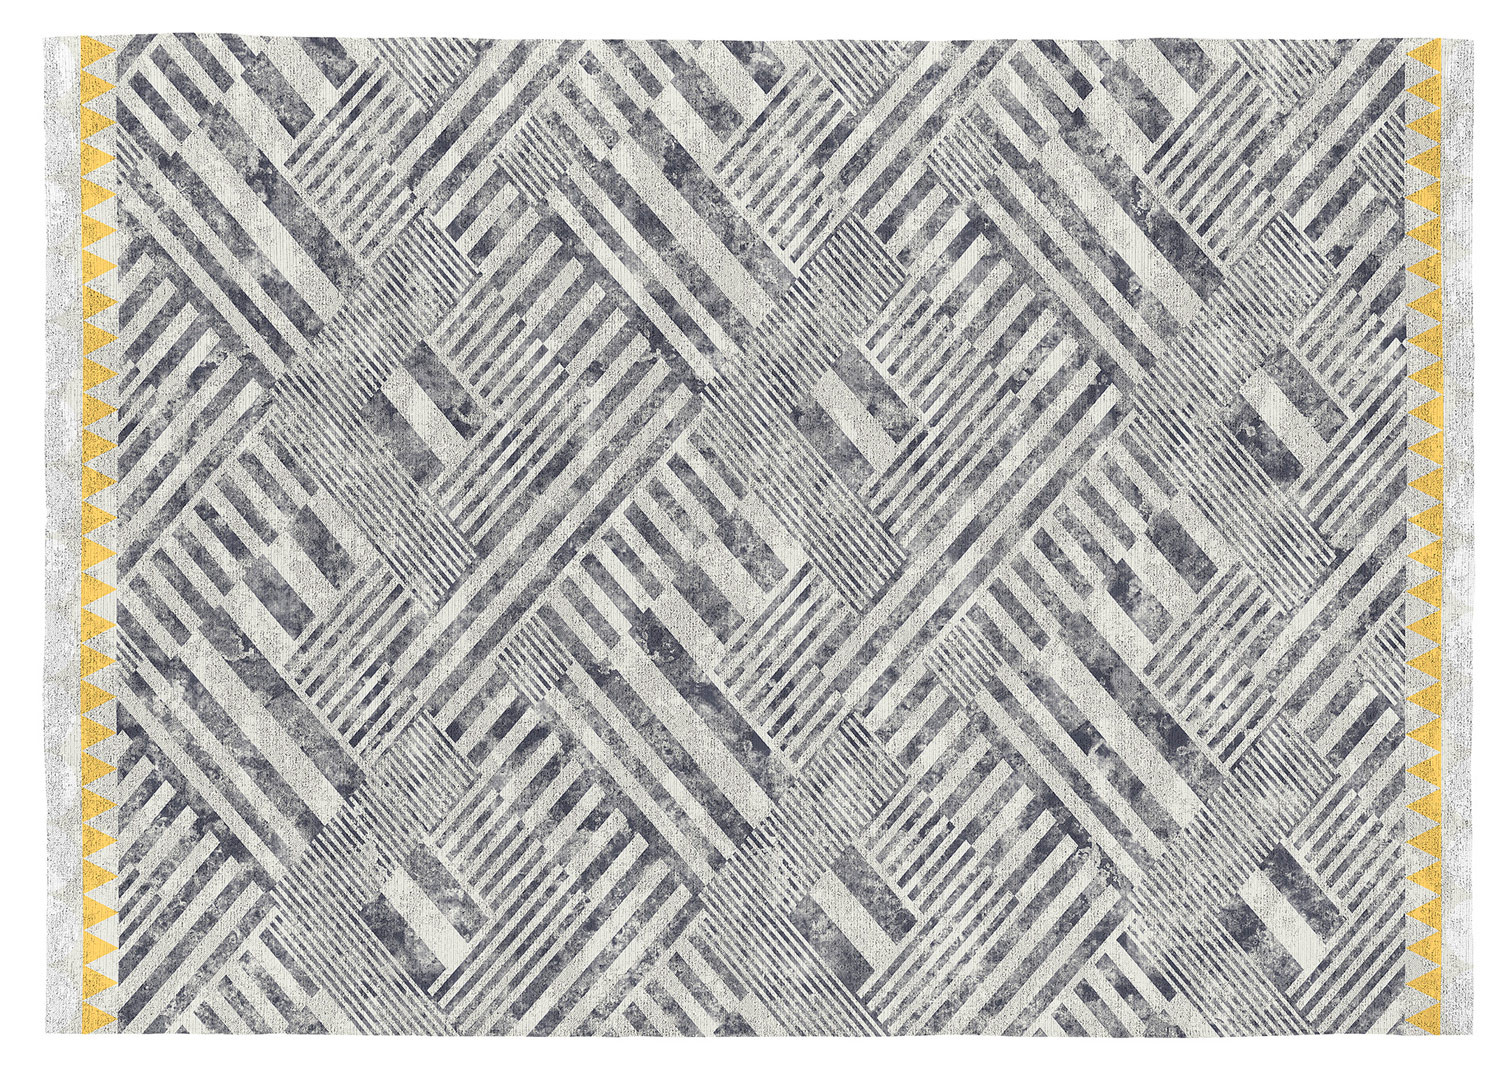 Tapis de salon design gris plat en coton Loira